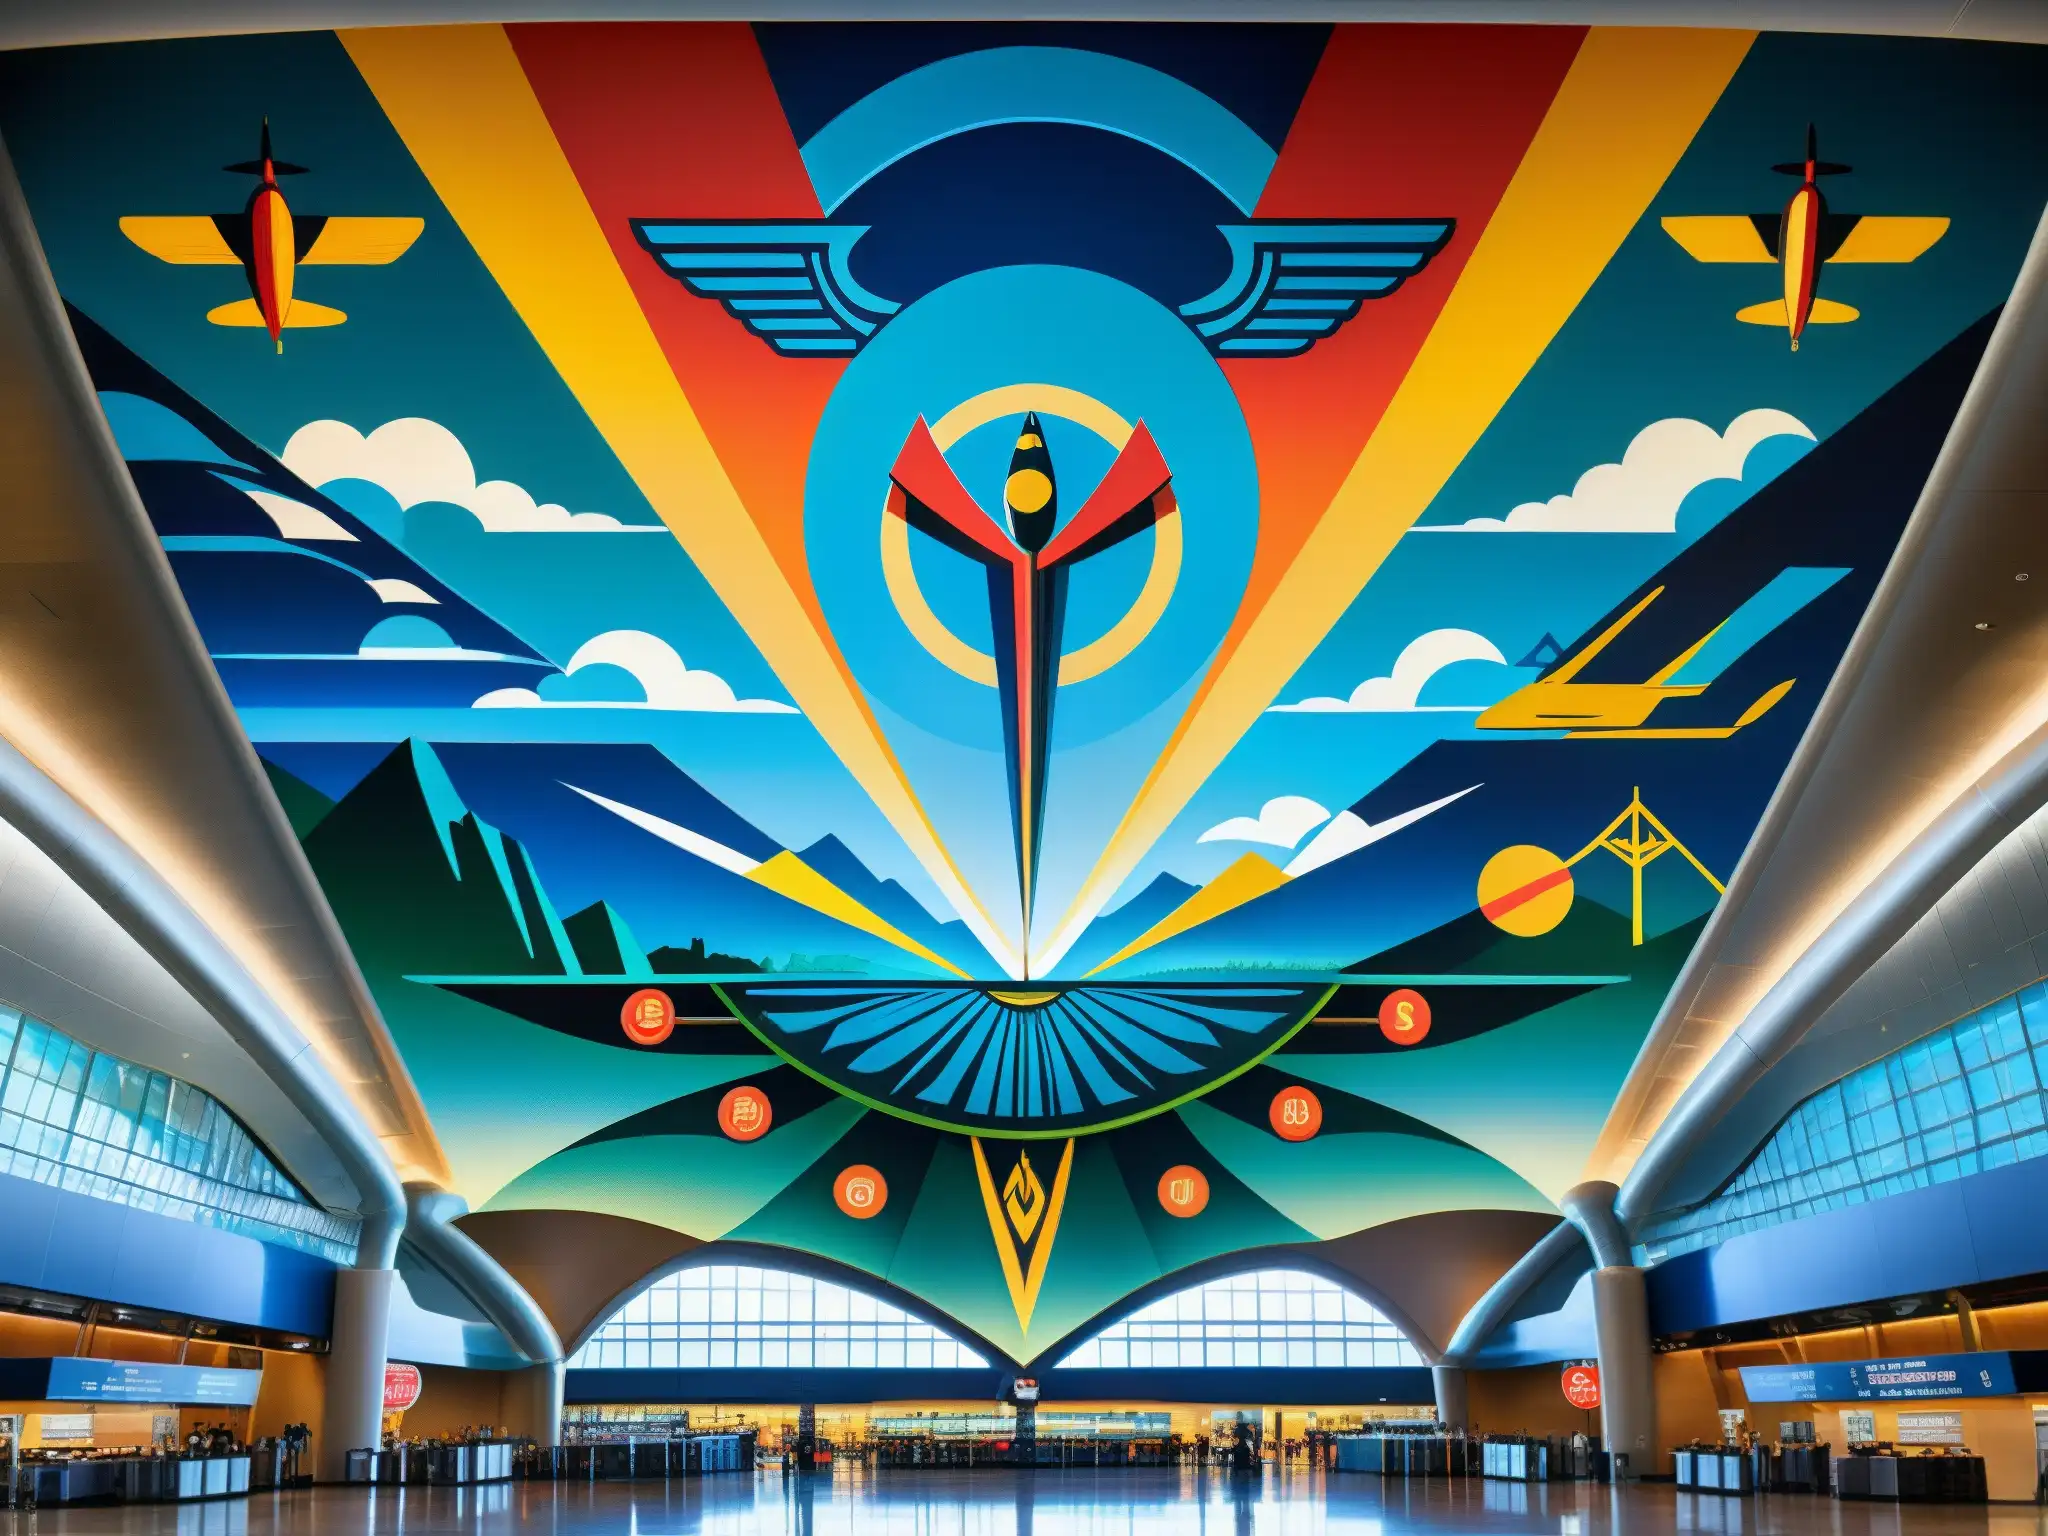 Murales detallados del aeropuerto de Denver, con símbolos enigmáticos que han generado teorías sobre la base subterránea de Denver mito